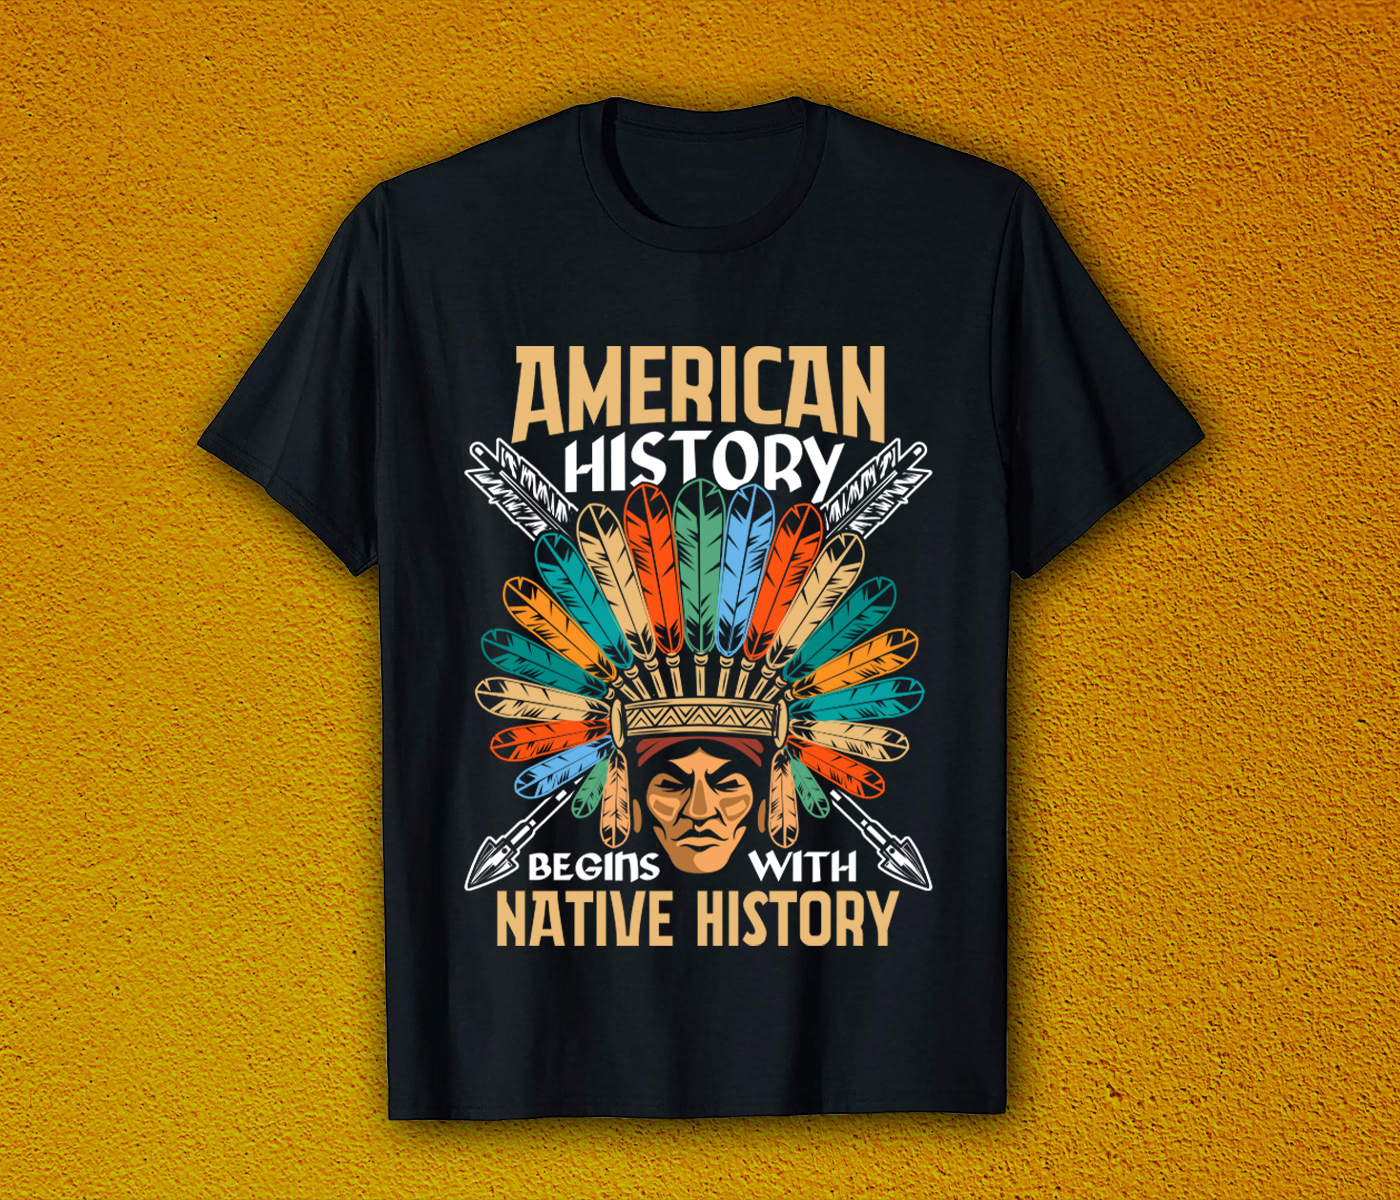 T-Shirt Design american pride t-shirt American T-Shirt BLACK PRIDE T-SHIRT HISTORICAL T-SHIRT NATIVE AMERICAN T-SHIRT NATIVE HISTORI T-SHIRT native pride native t-shirt pride t-shirt